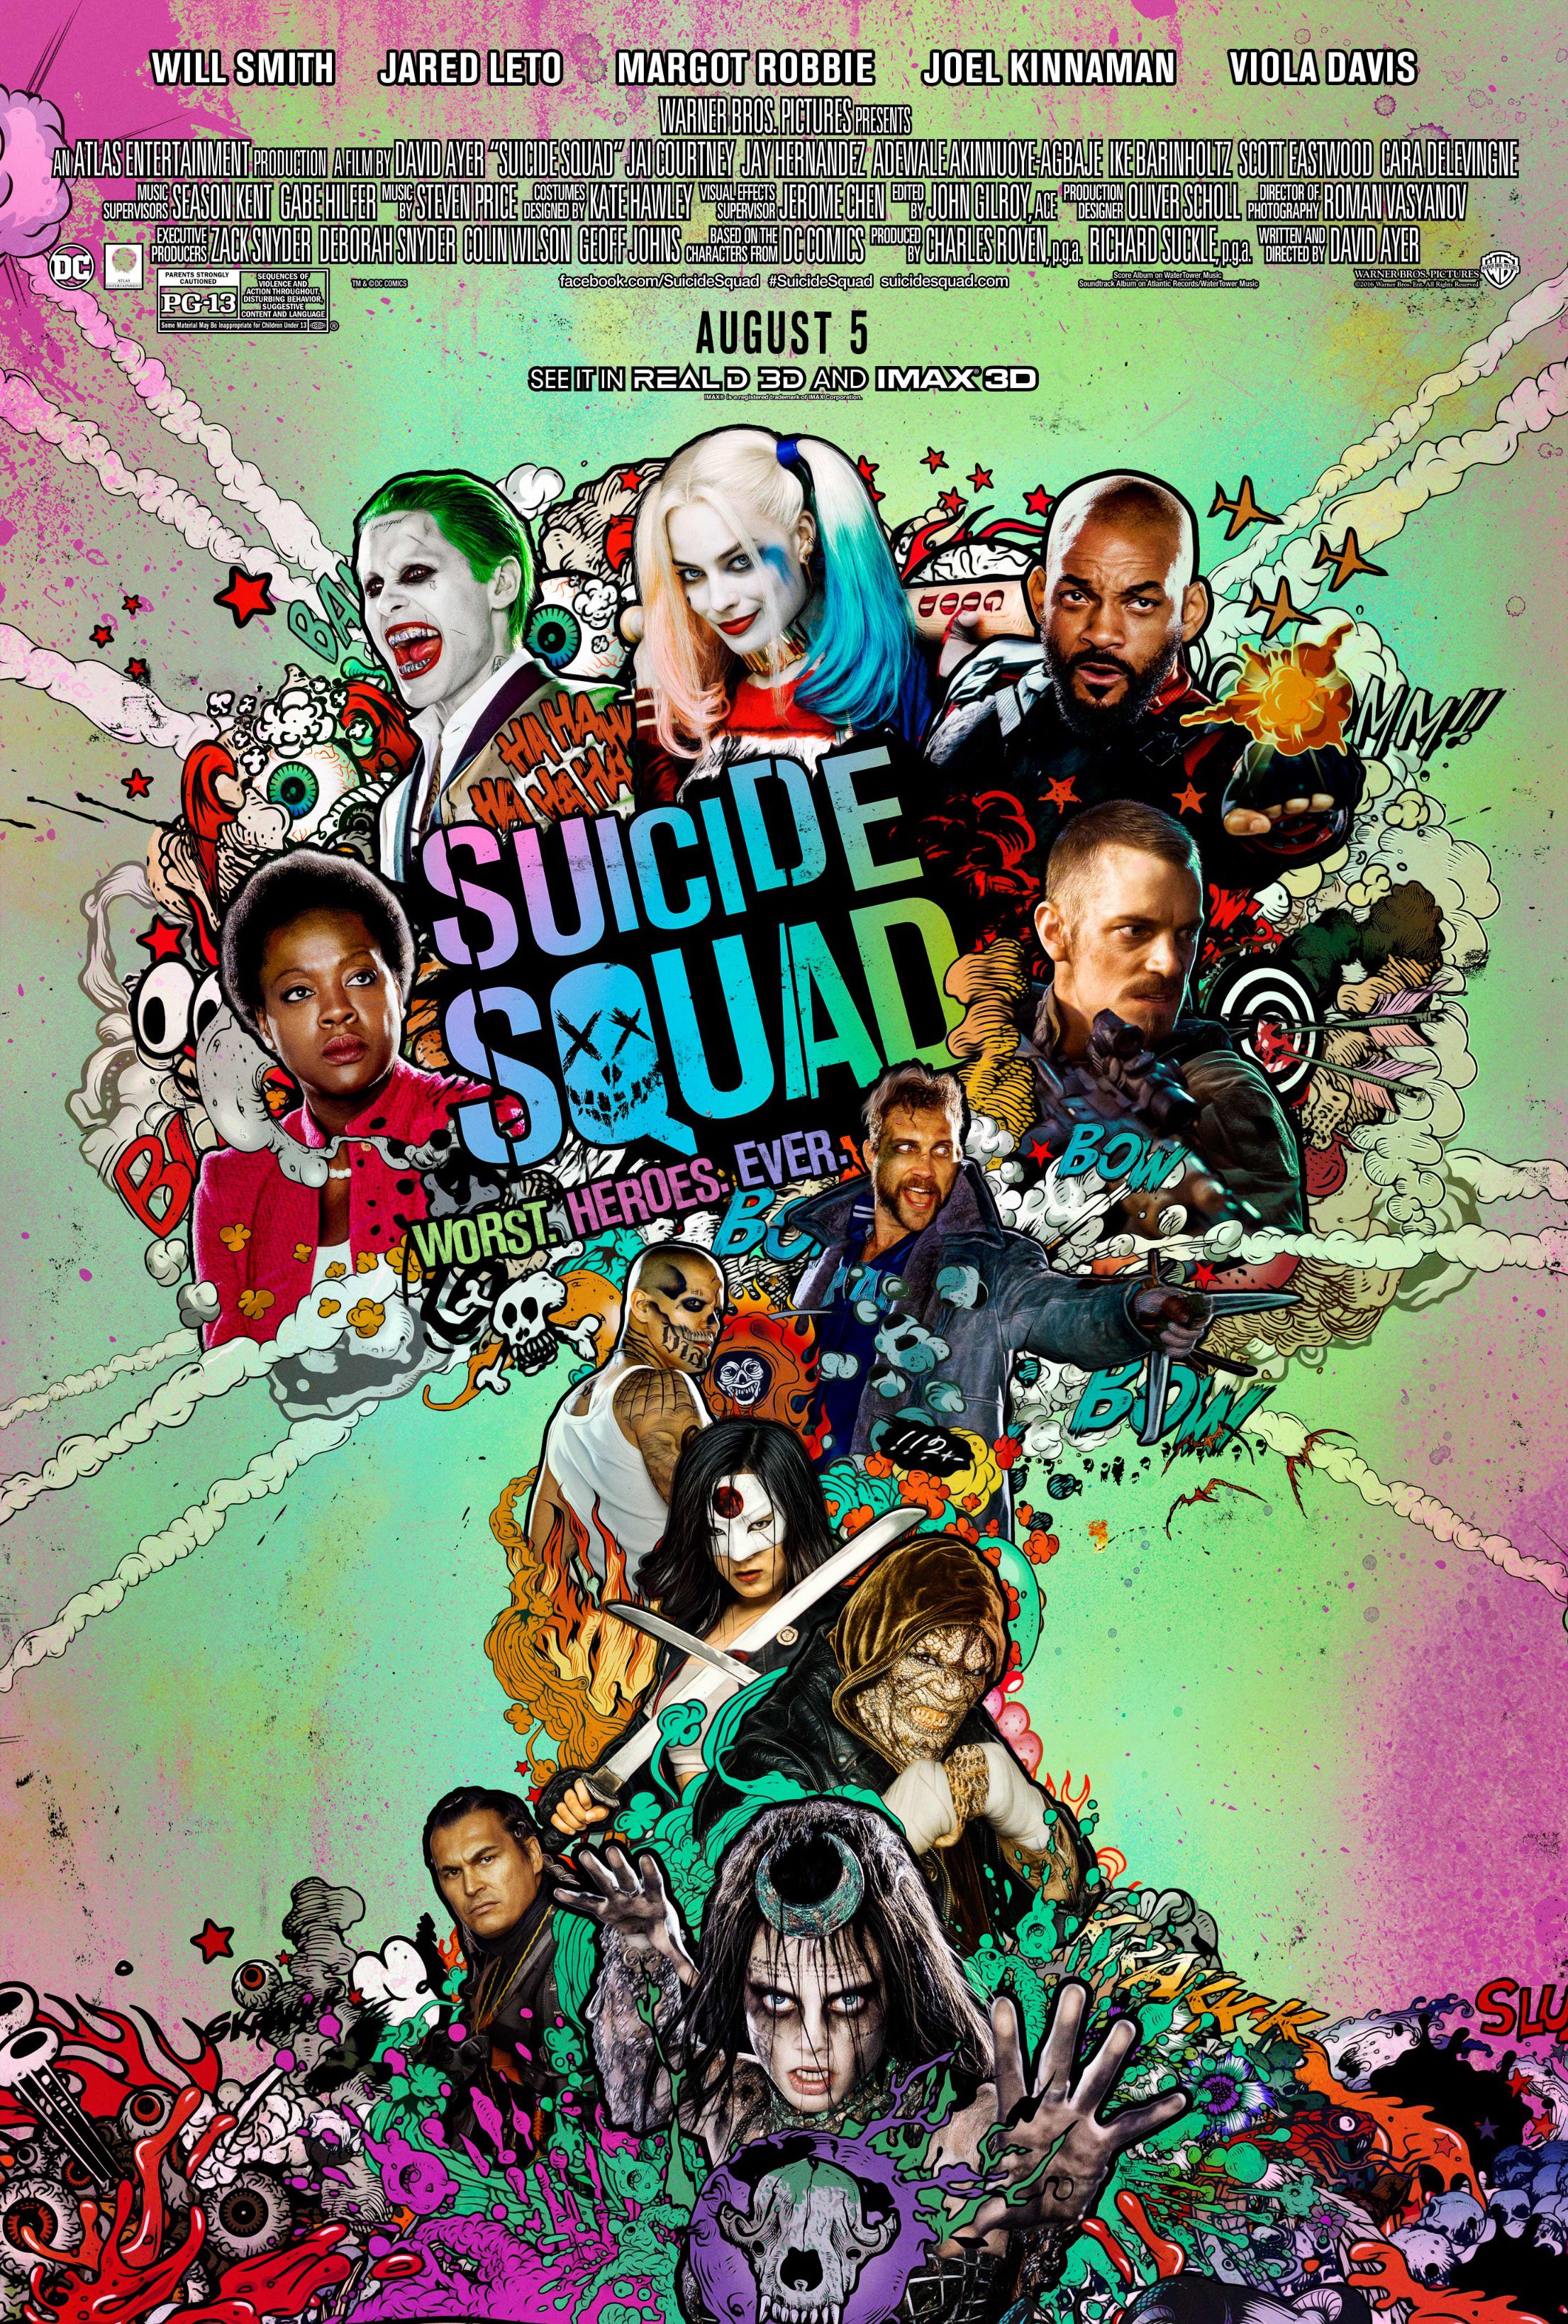 Suicide Squad merchandise | DC Extended Universe Wiki | Fandom